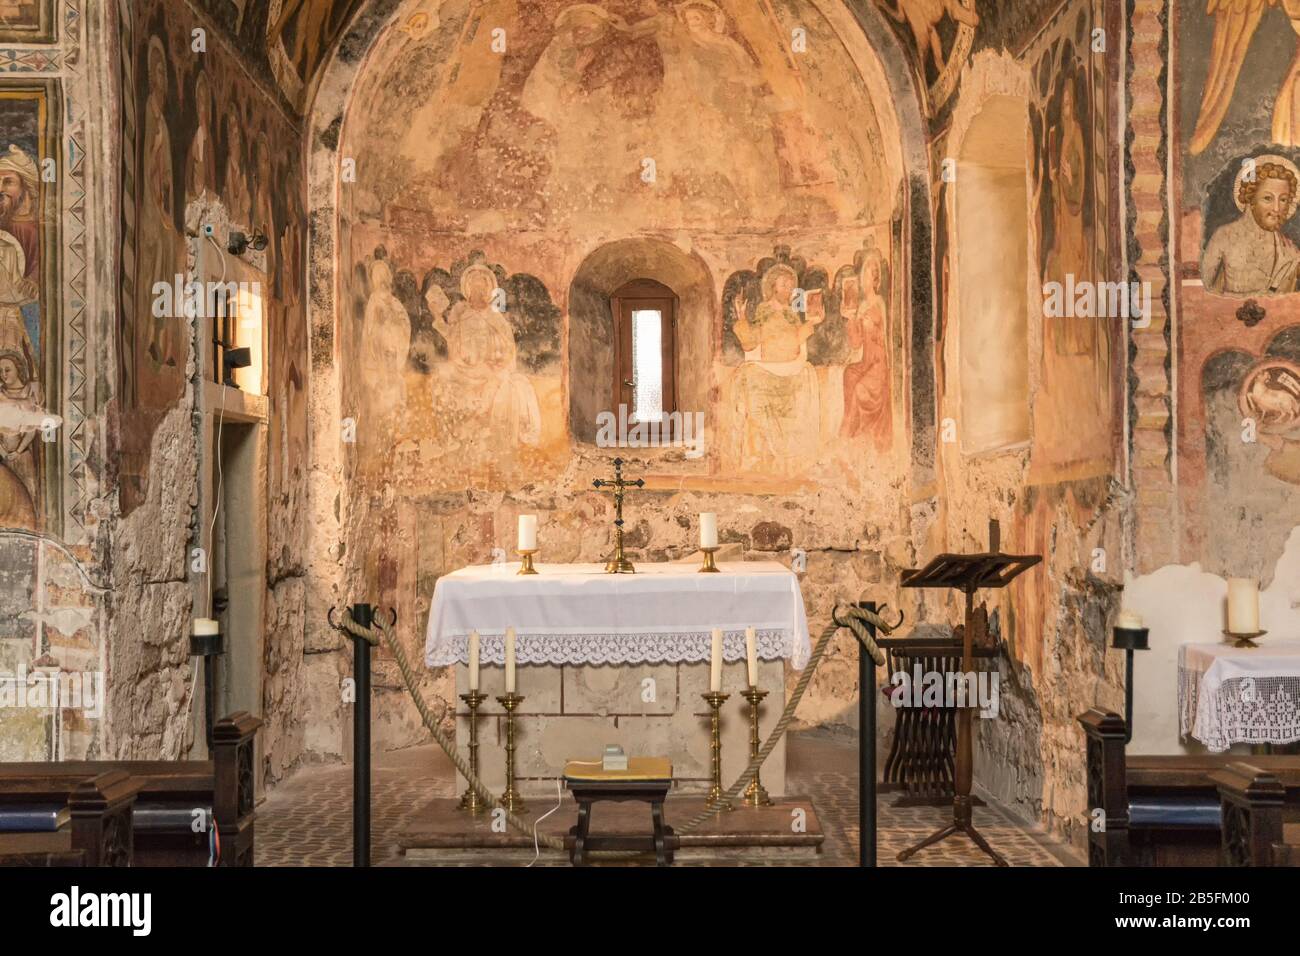 Antica chiesetta di San Giovanni nel centro storico di bolzano in Alto Adige, Trentino Alto Adige, Italia settentrionale - 9 novembre 2019 Foto Stock